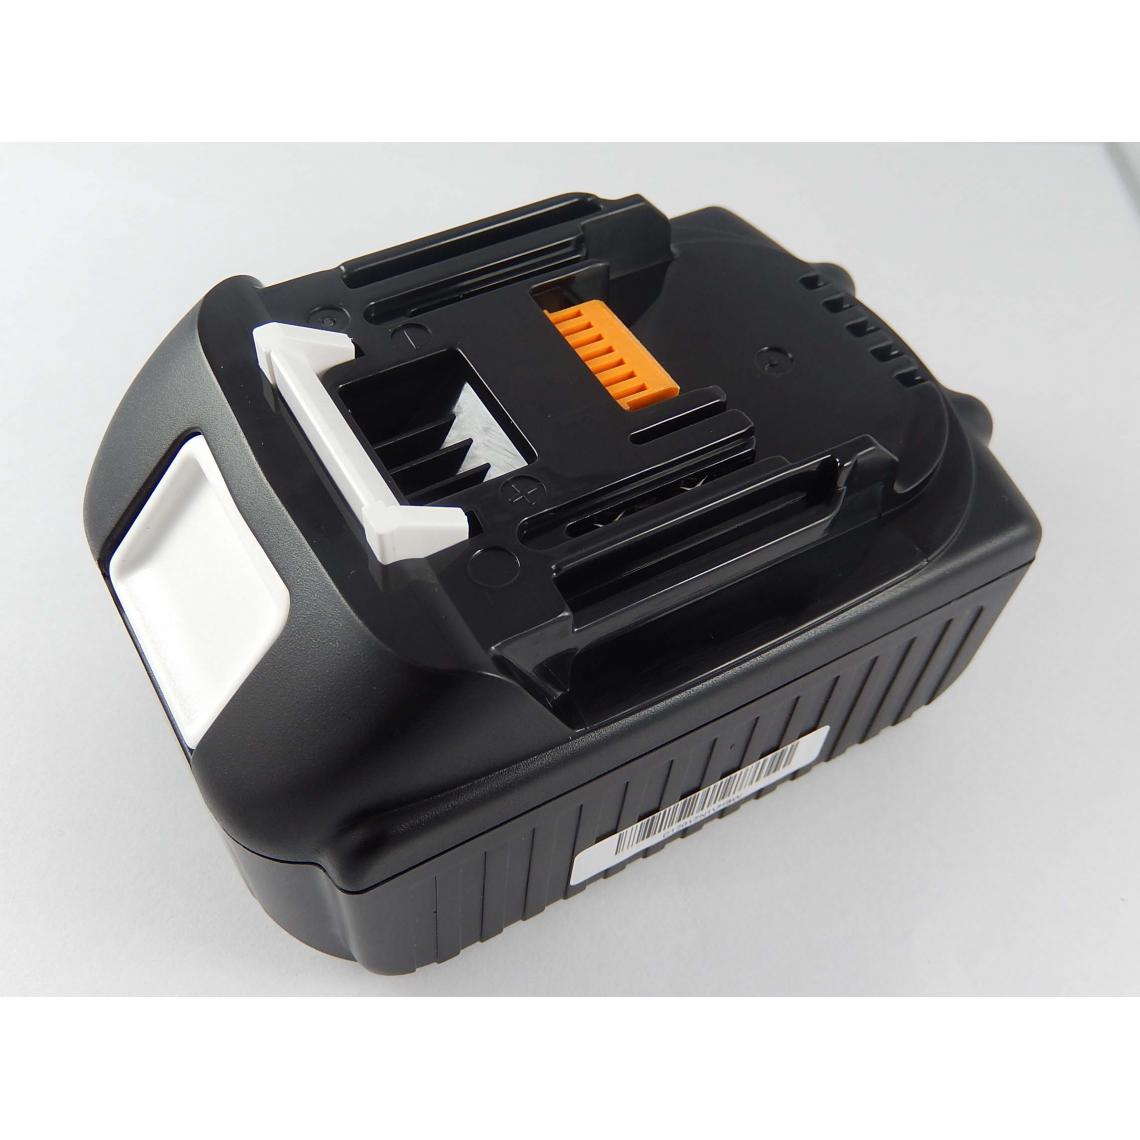 Vhbw - vhbw Batterie compatible avec Linder LST450, LST-450 outil électrique (2000 mAh, Li-ion, 18 V) - Accessoires vissage, perçage